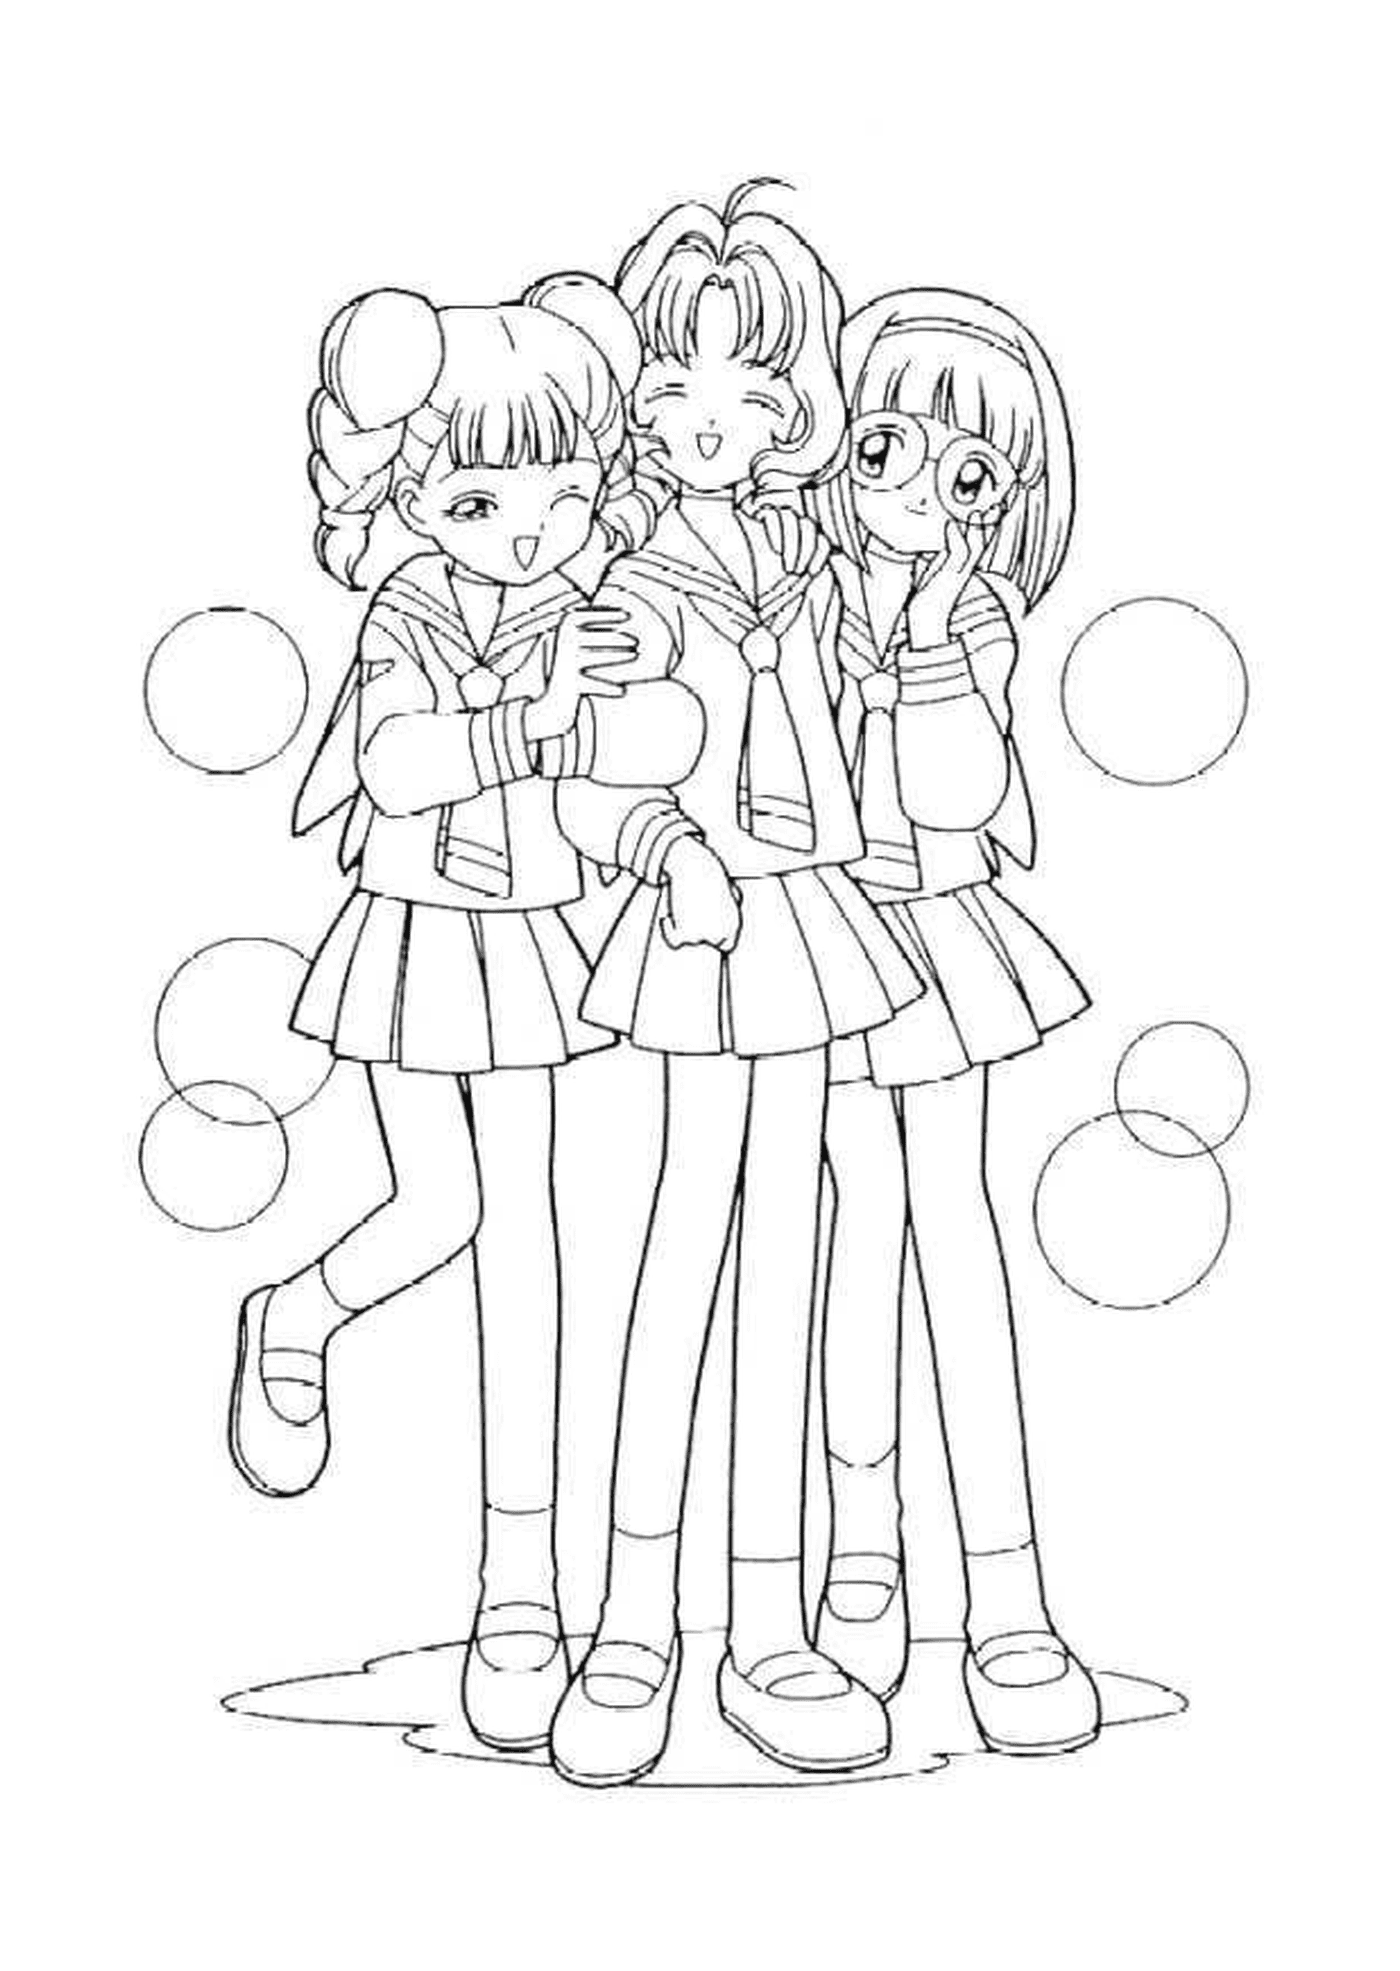  Группа в составе трех девочек, стоящих бок о бок 